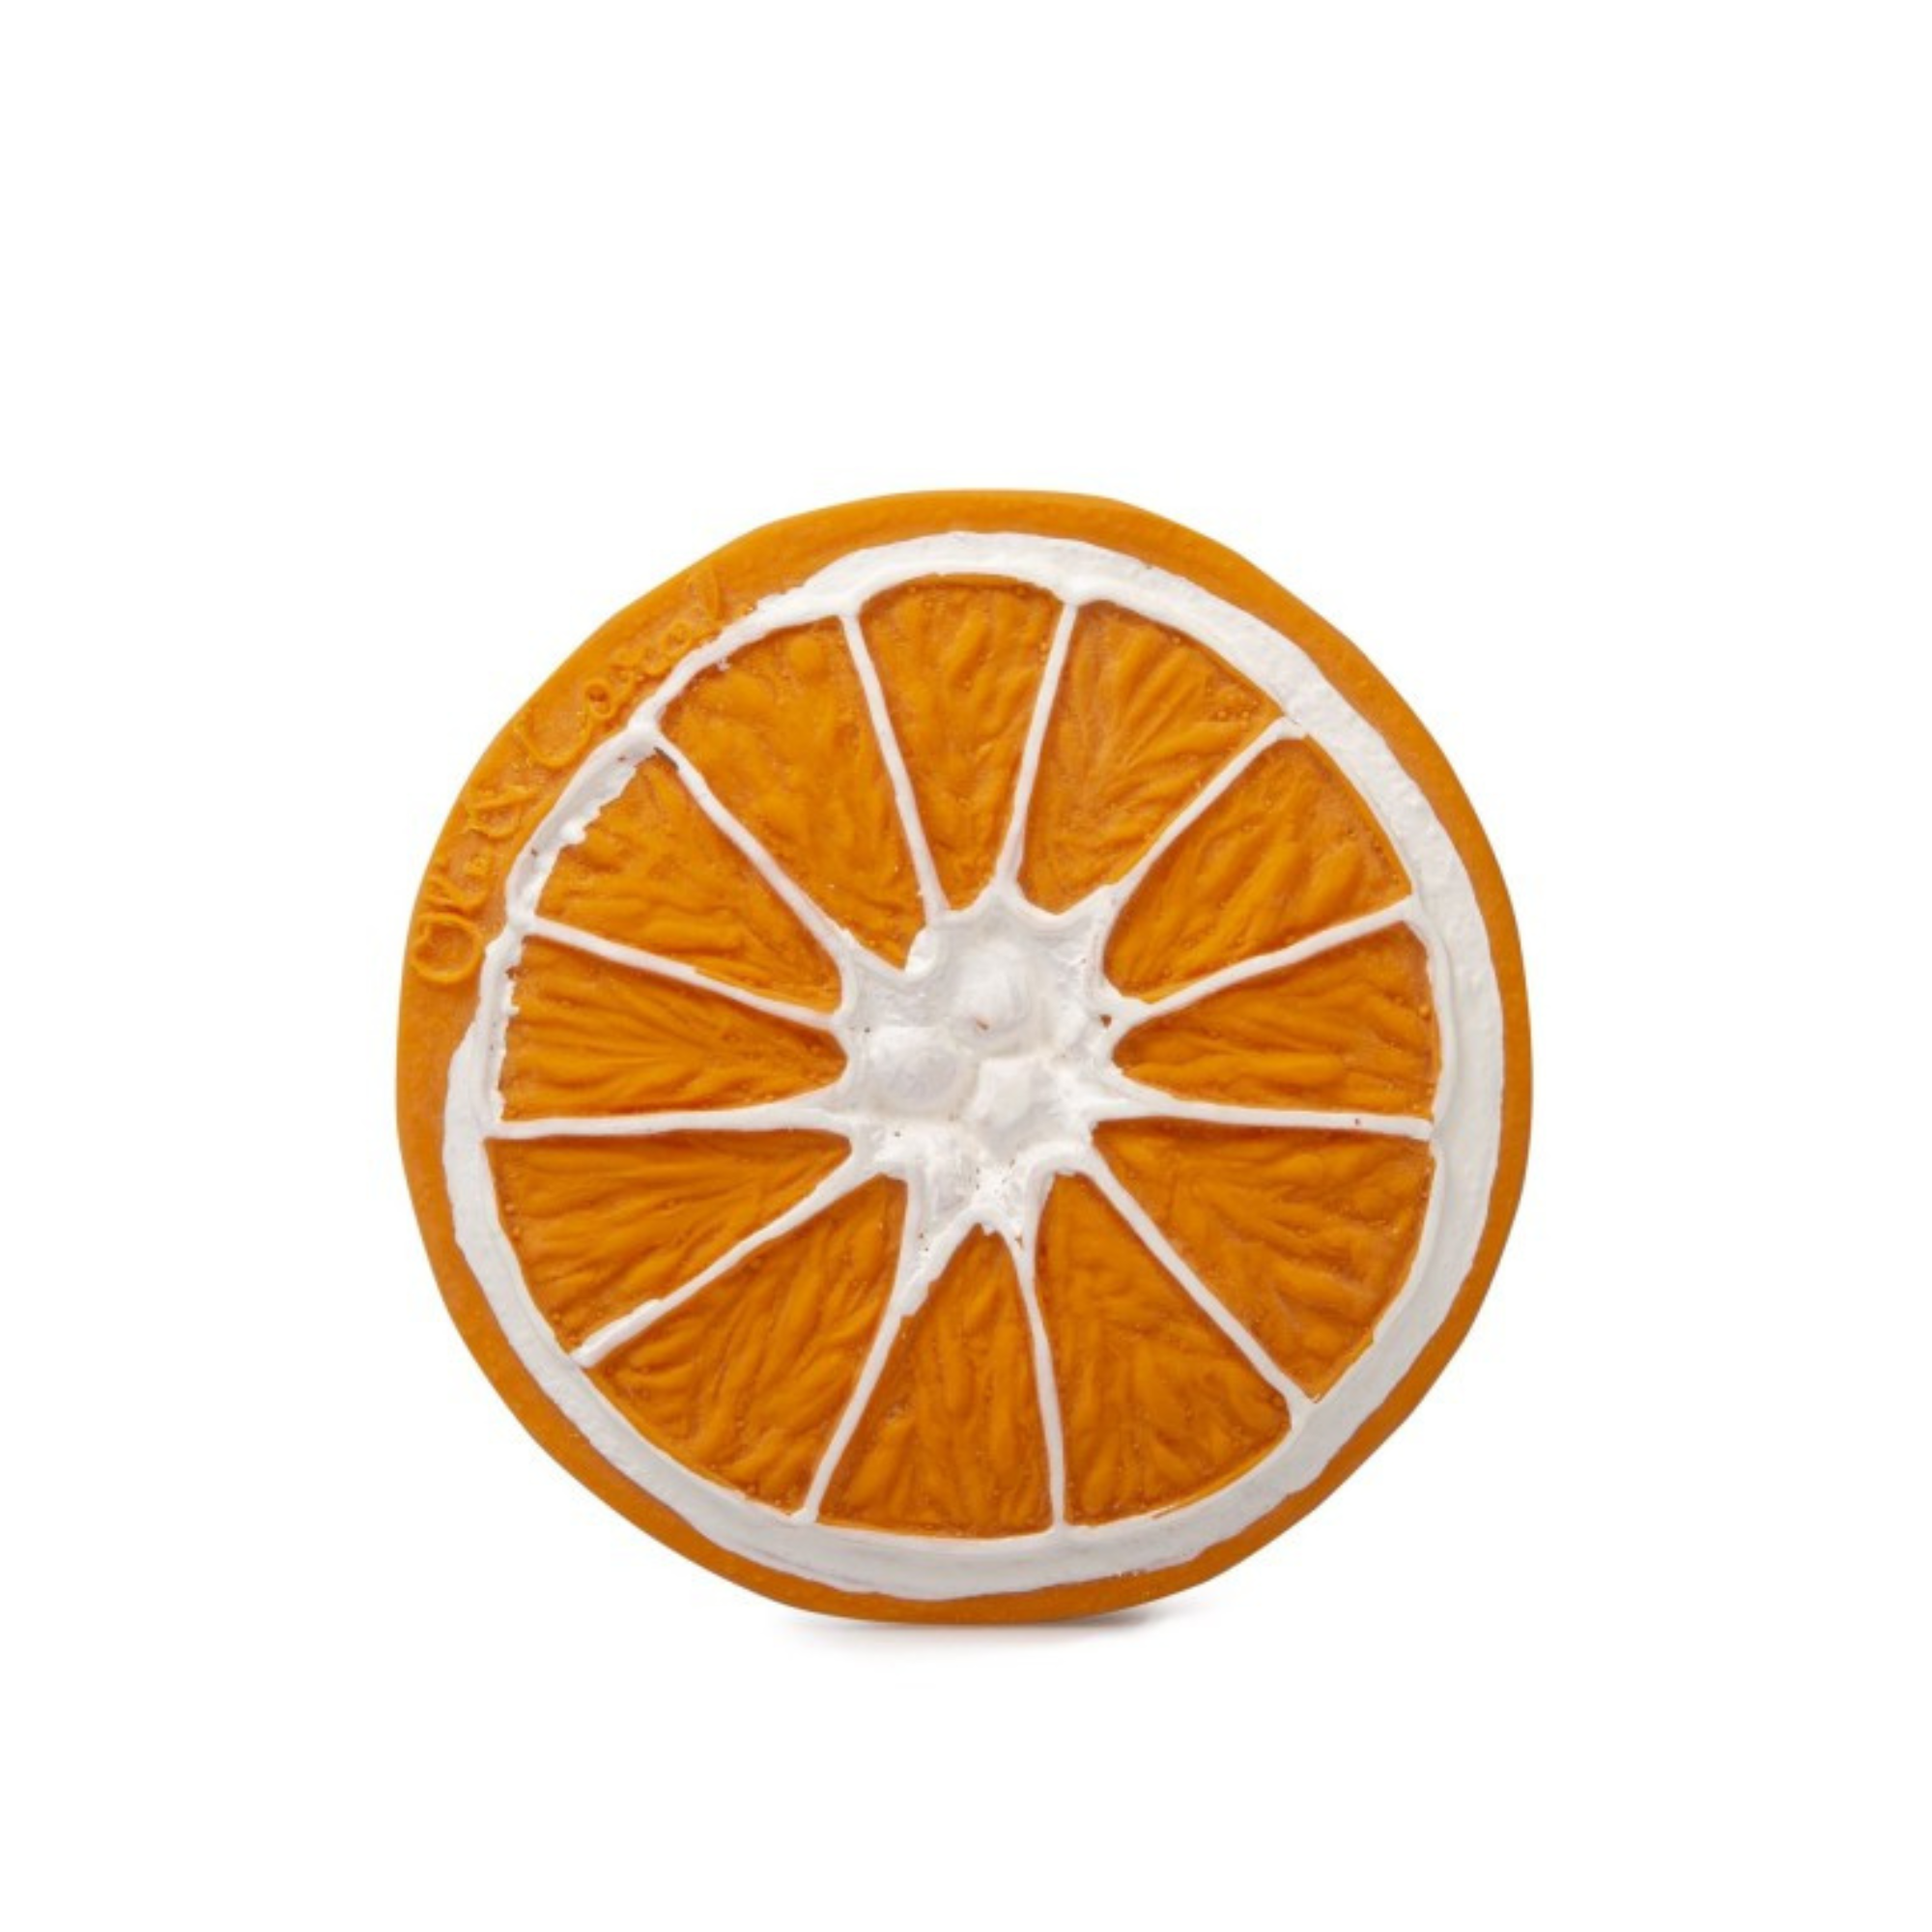 Kramtukas Clementino the Orange